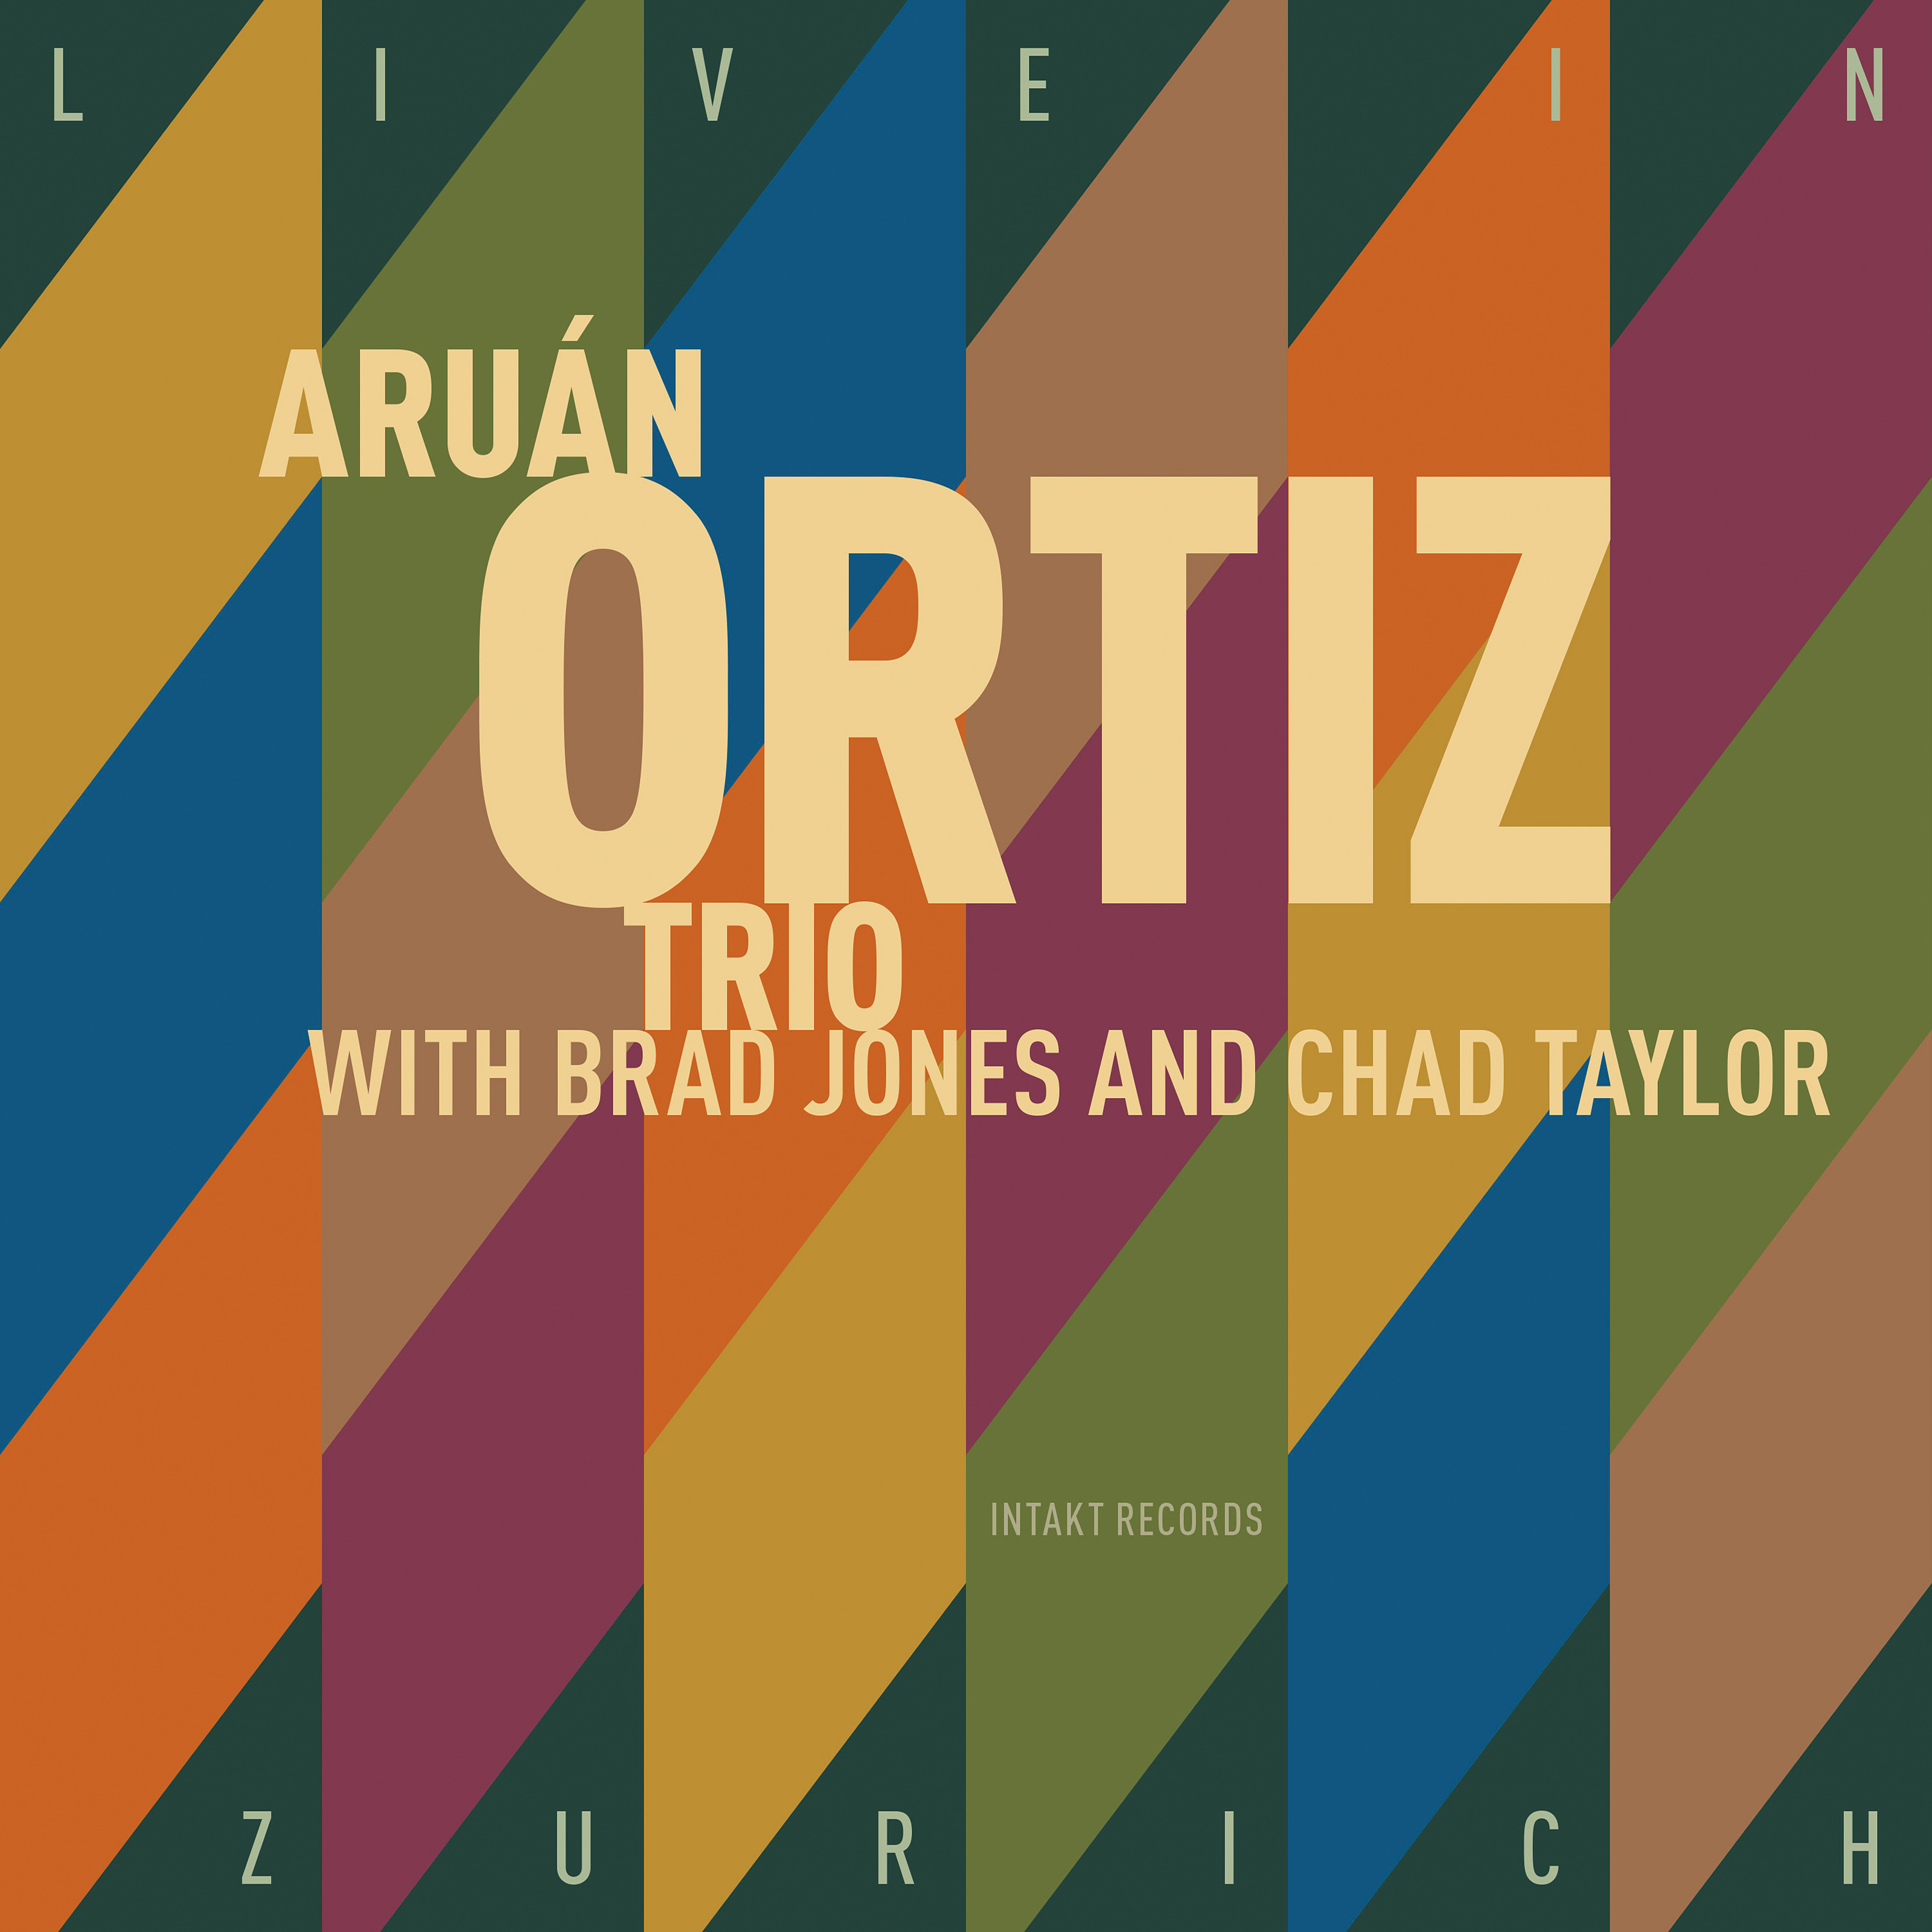 Aruan Ortiz Trio - Live In Zurich (2018) [AcousticSounds FLAC 24bit/48kHz]